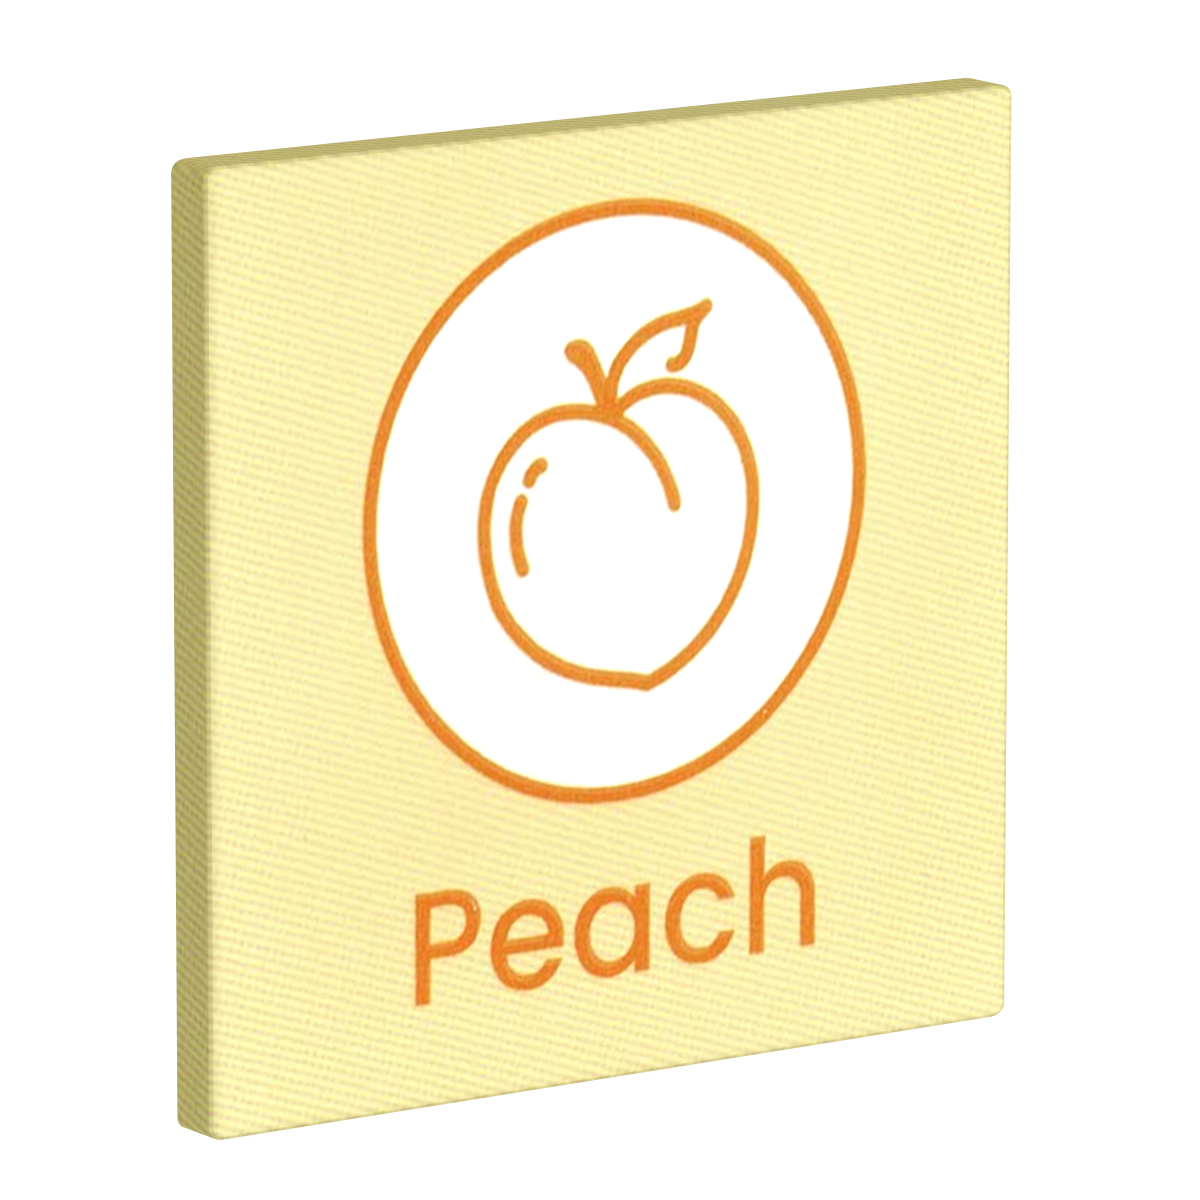 Lovelyness «Peach» 1 leckeres Kondom mit extrem fruchtigem Pfirsich-Geschmack beim Akt der Liebe